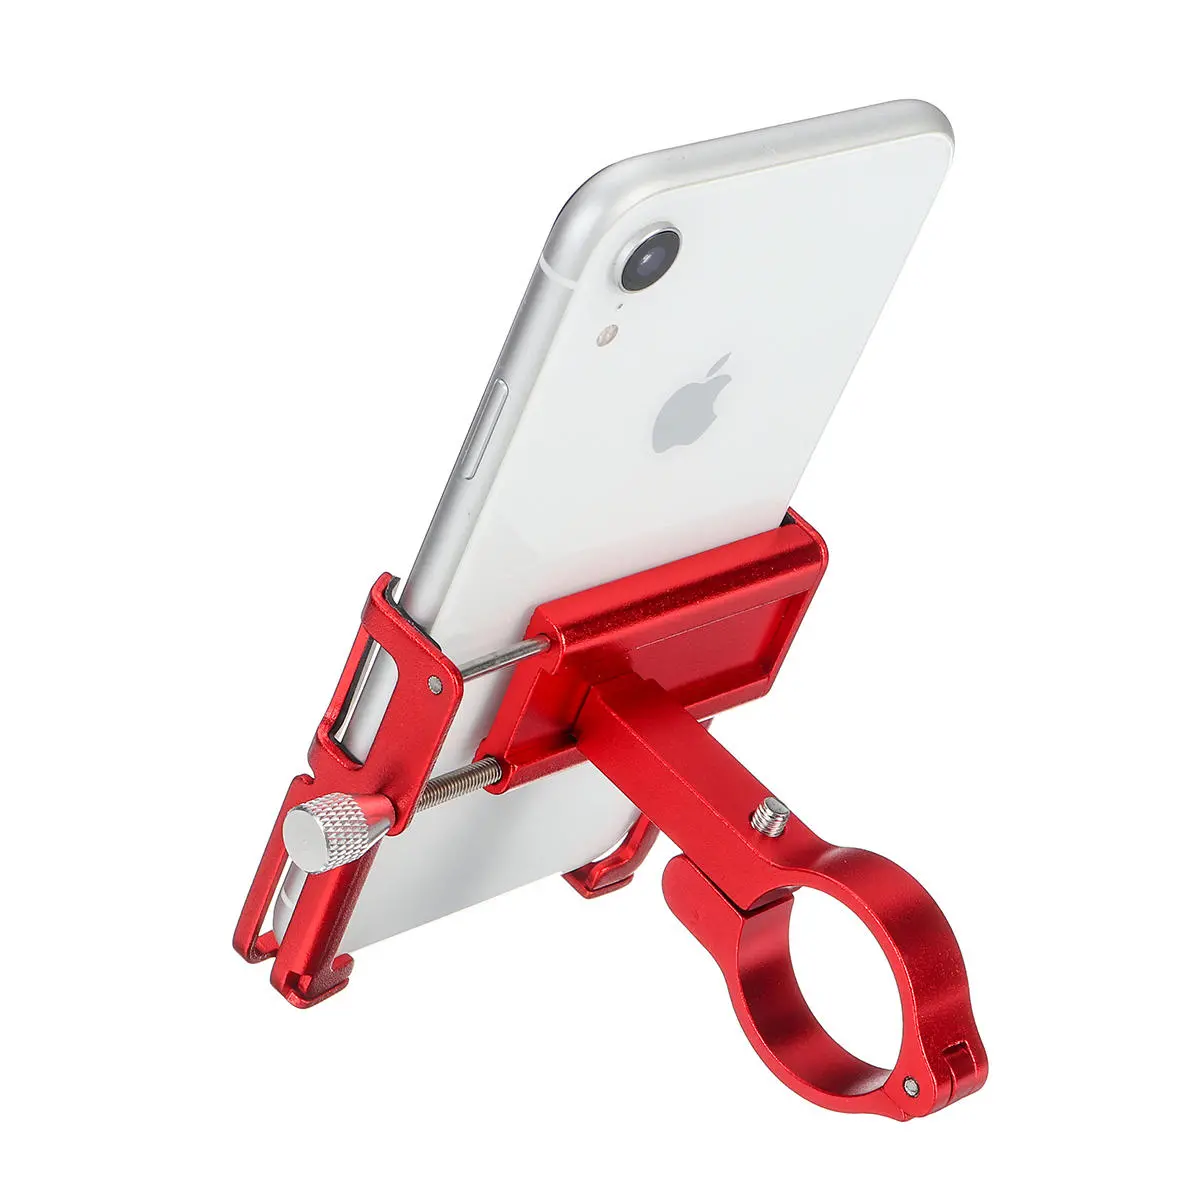 Supporto del telefono del manubrio della bici della bicicletta della bicicletta della lega di alluminio con il cinturino in silicone per smartphone da 3.5 pollici-6.2 pollici